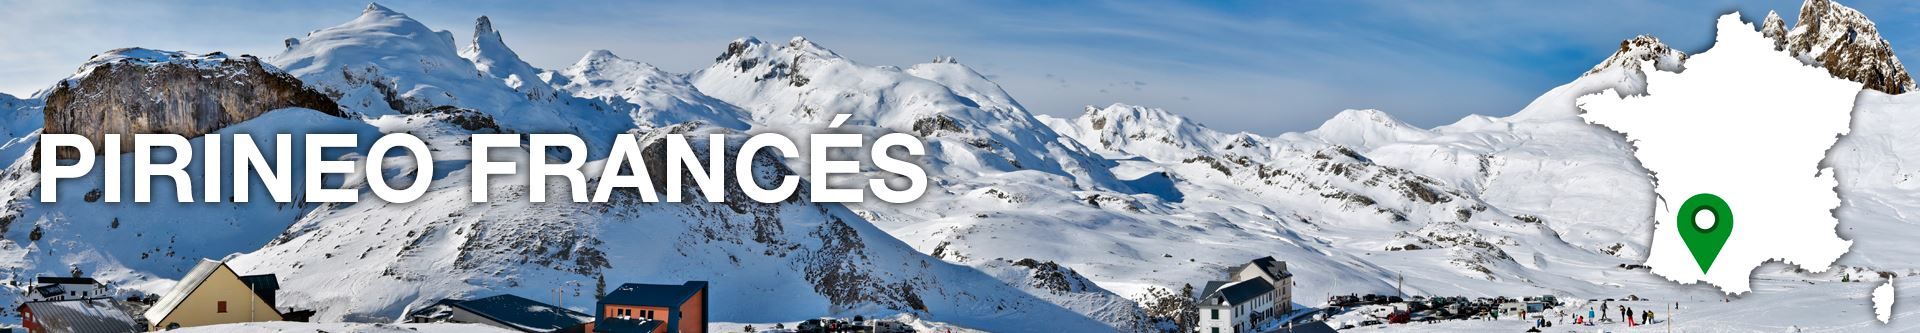 Hoteles en el Pirineo Francés - No pagues más por lo mismo